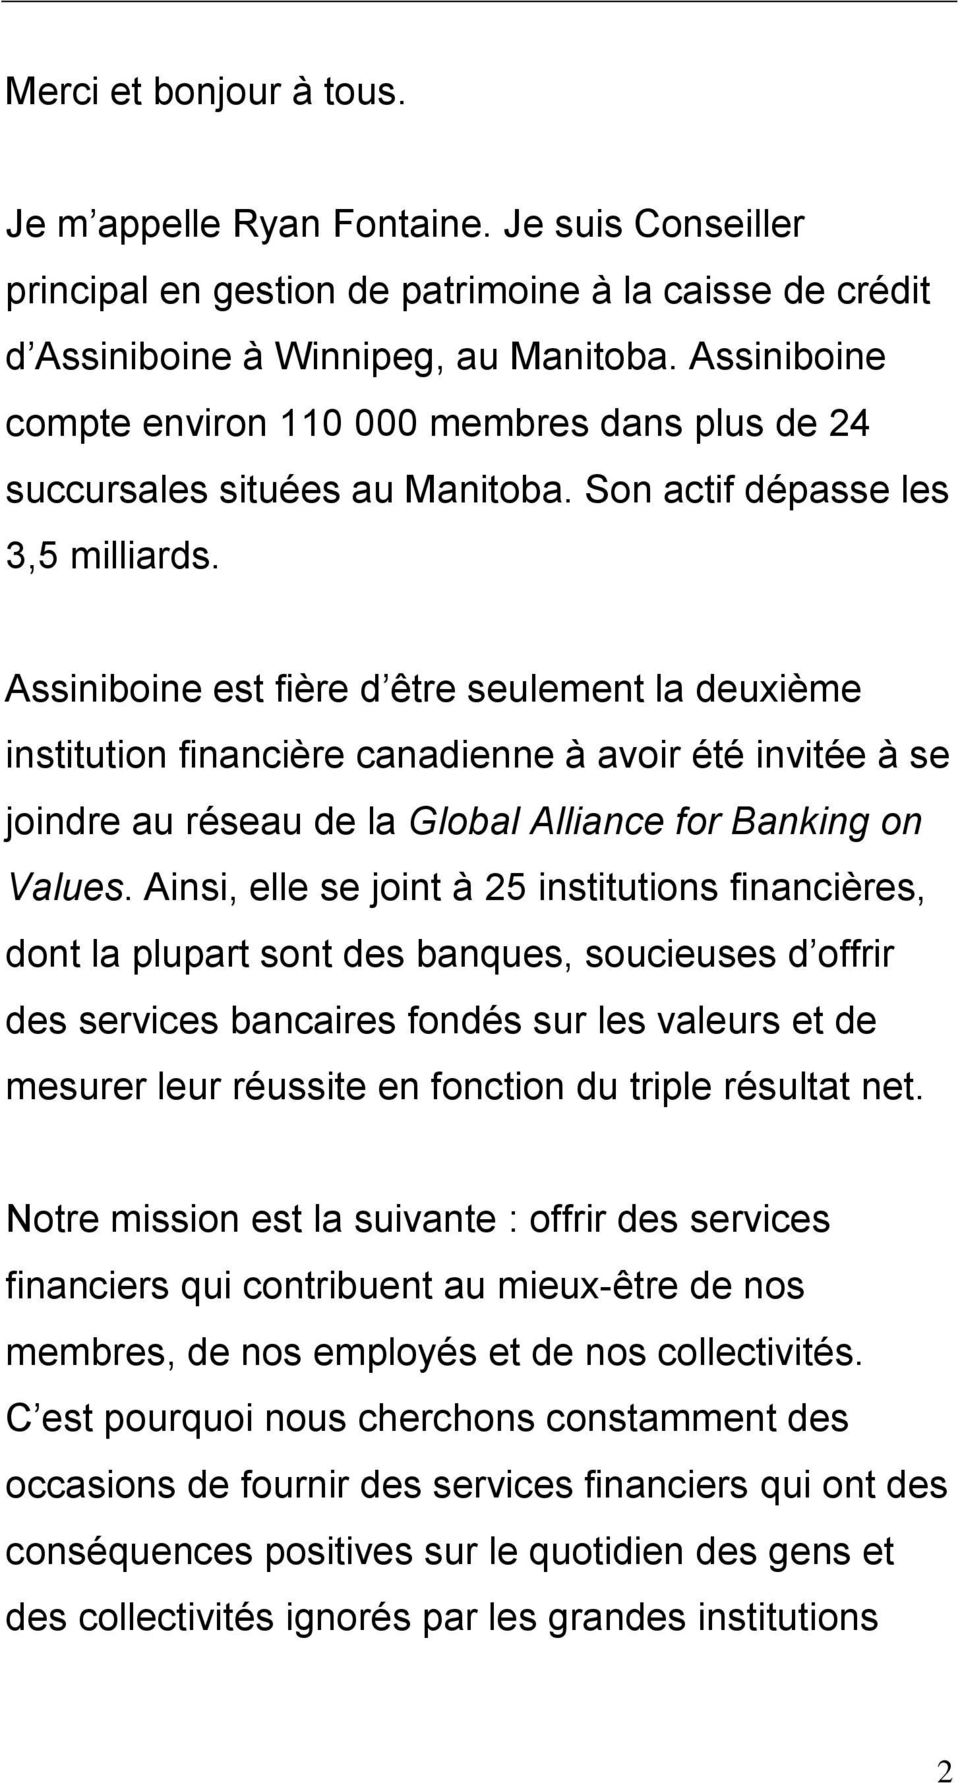 Assiniboine est fière d être seulement la deuxième institution financière canadienne à avoir été invitée à se joindre au réseau de la Global Alliance for Banking on Values.